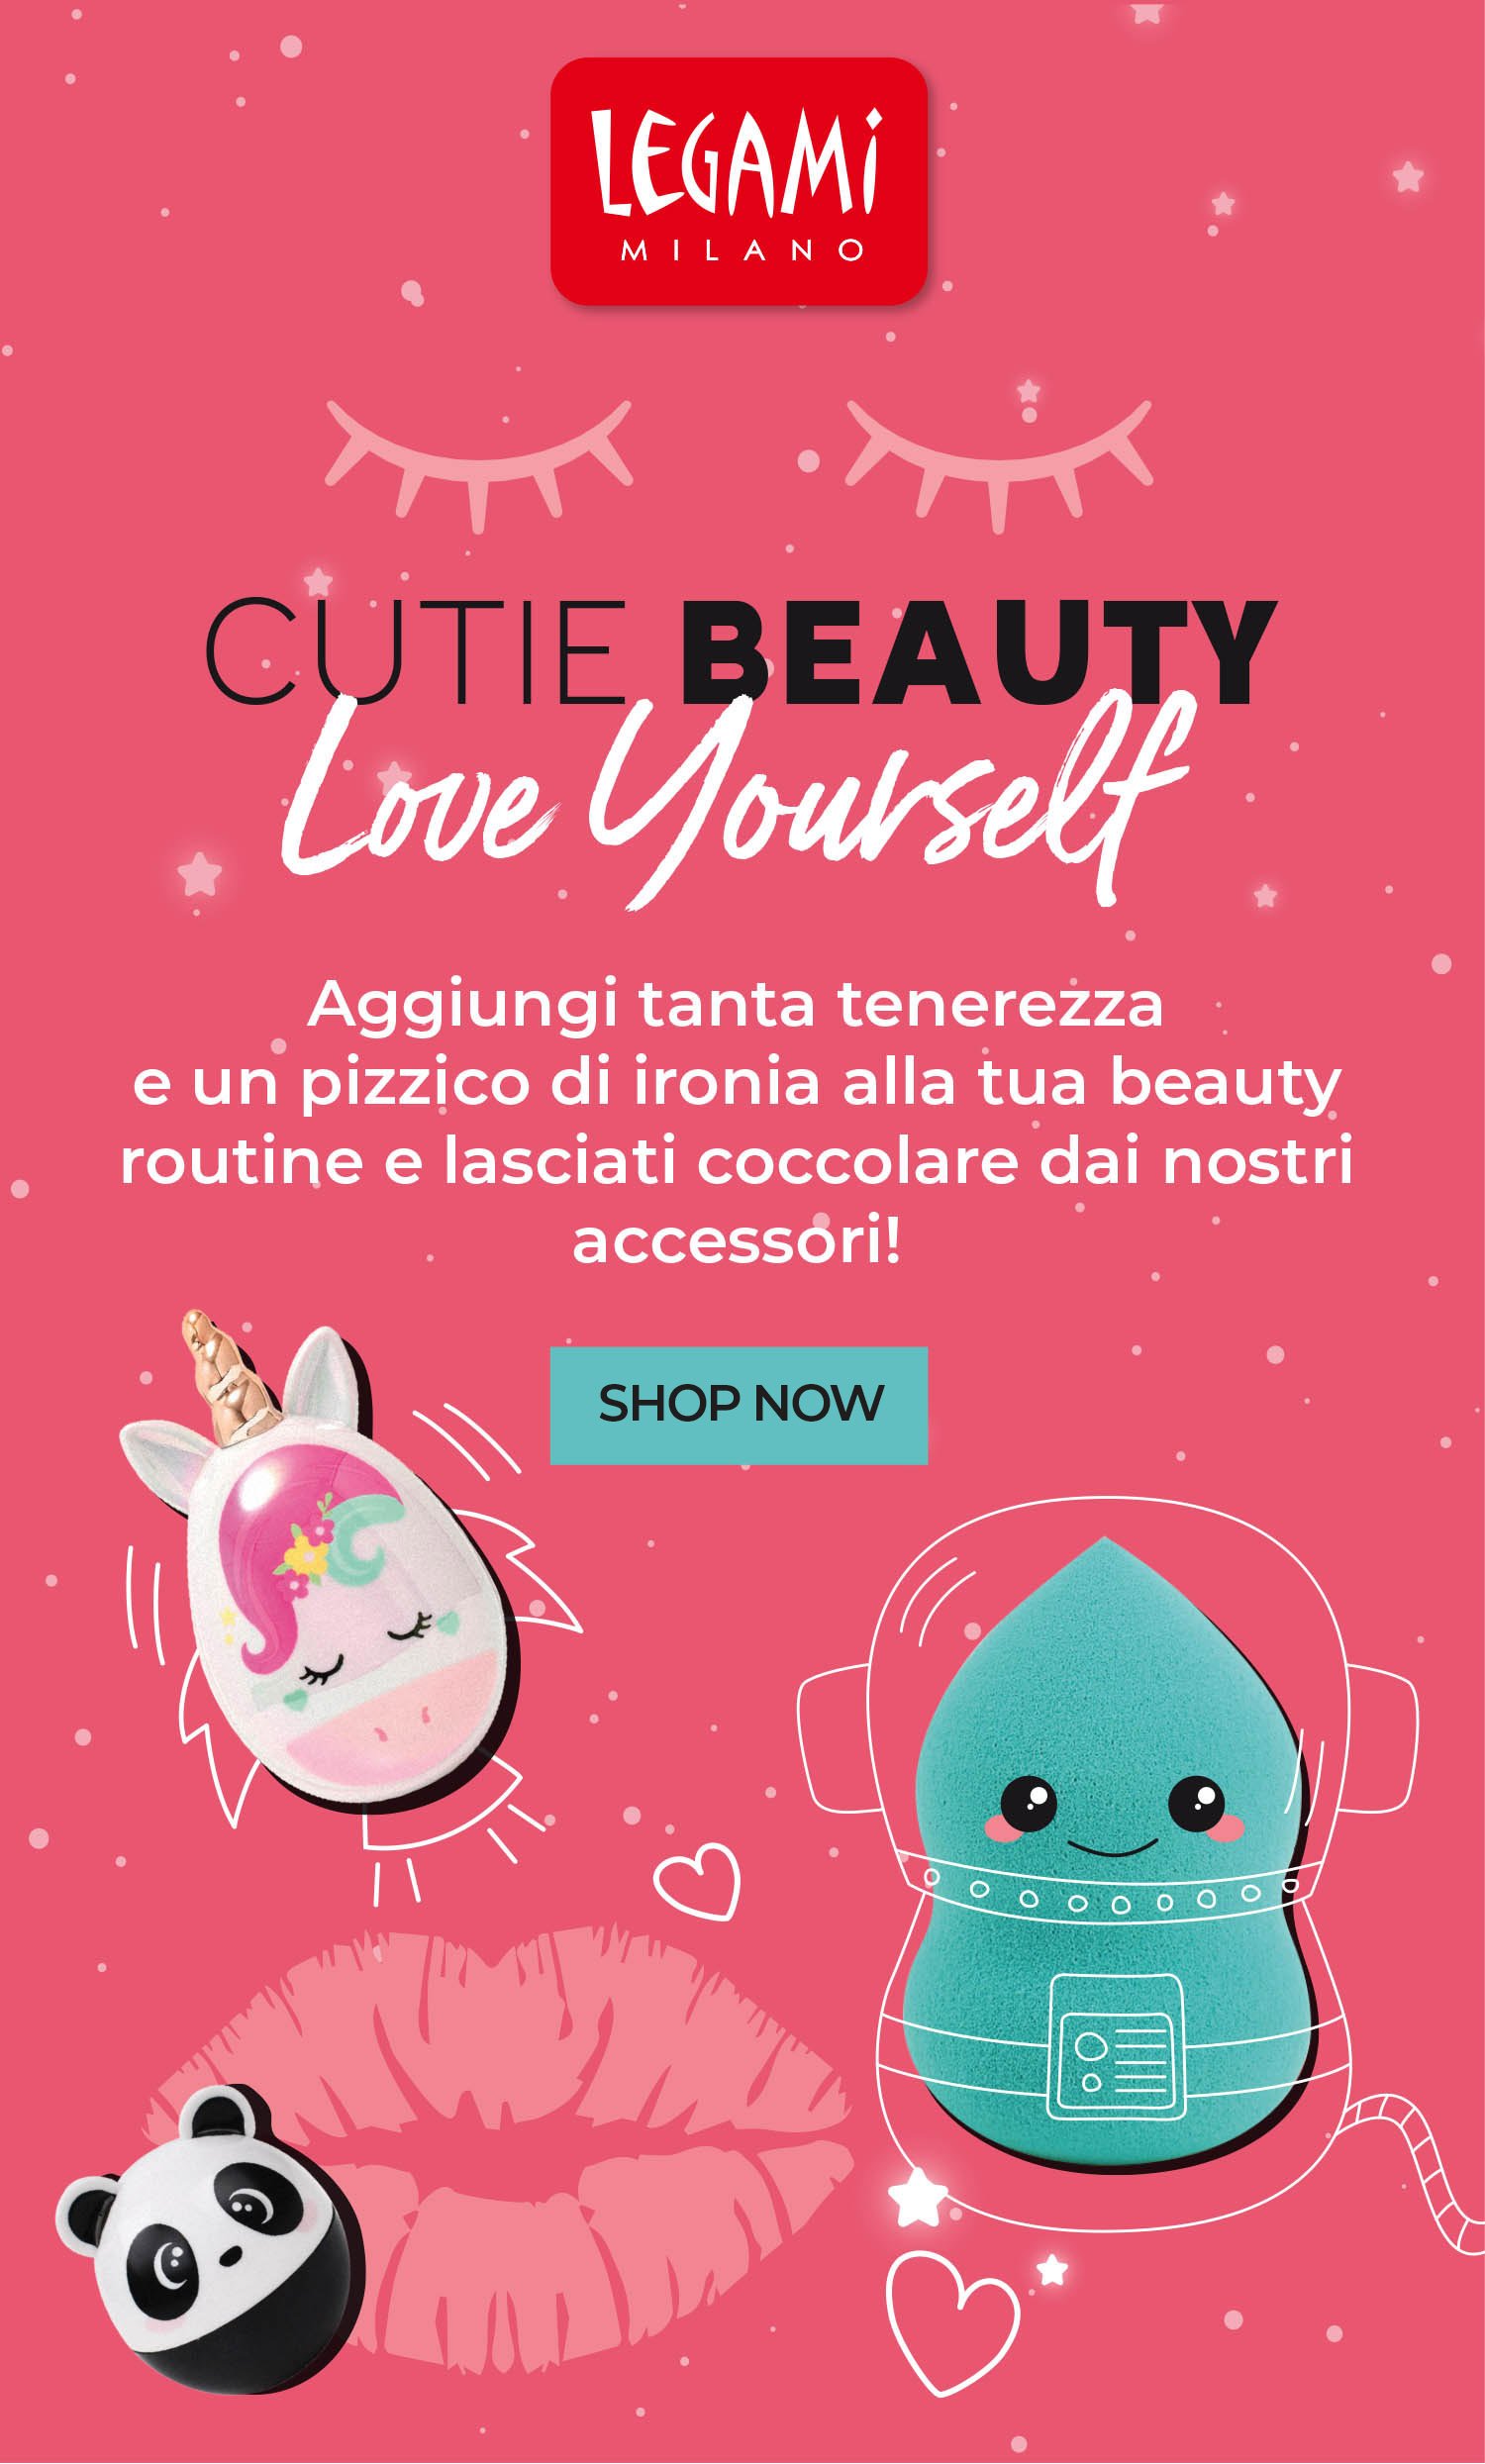 LEGAMI IT: Scopri la Collezione Cutie Beauty Legami